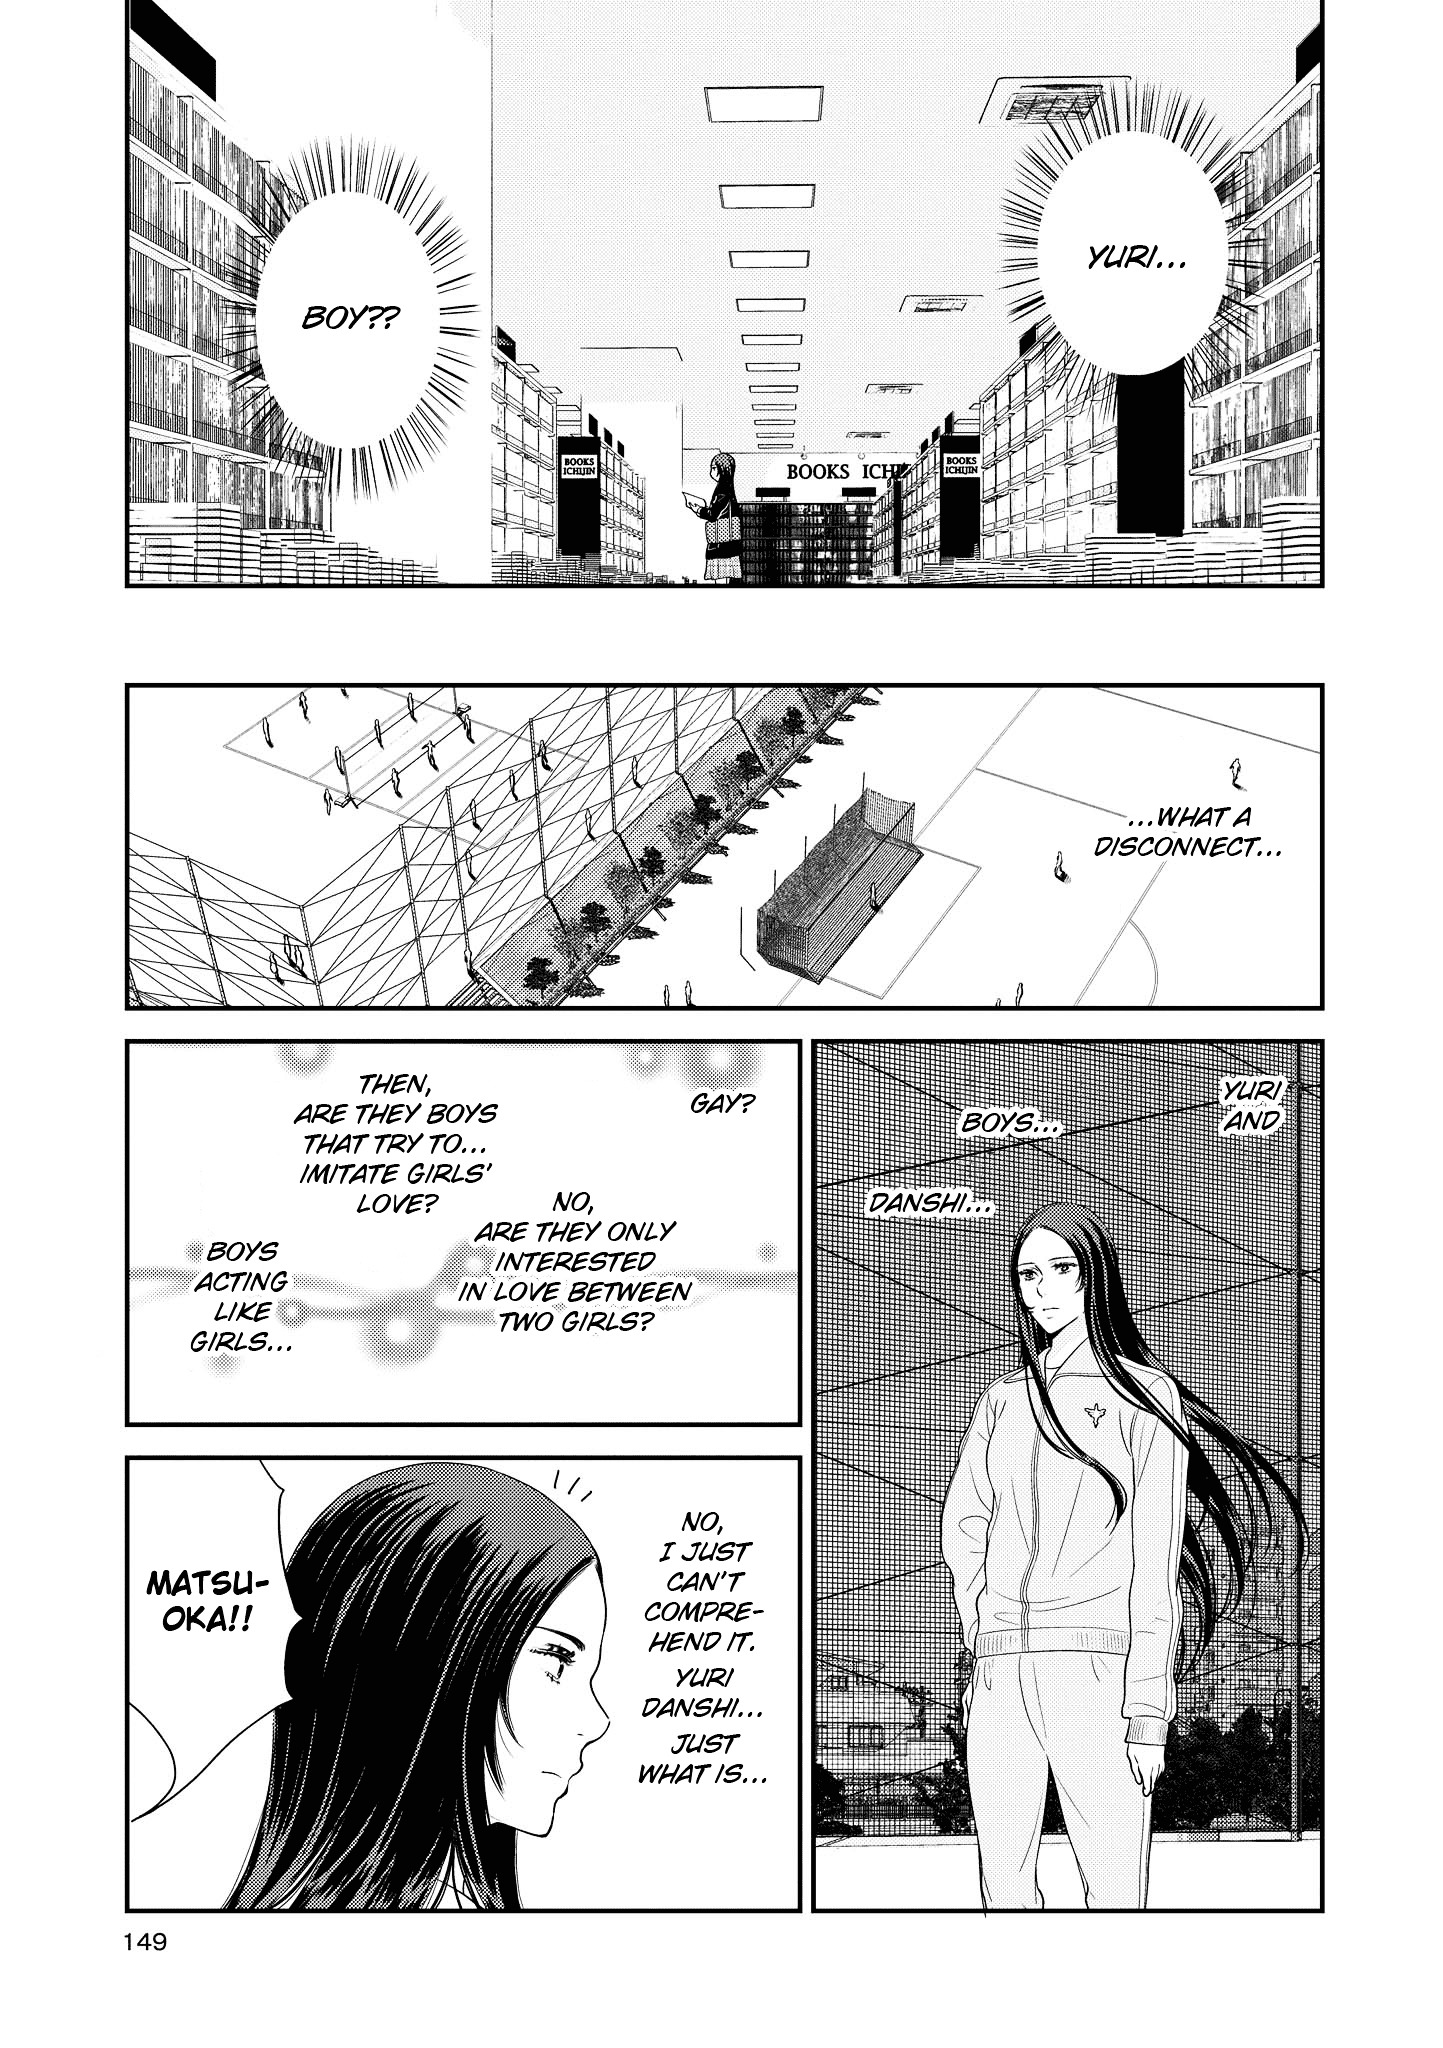 Yuri Danshi - chapter 4.2 - #5